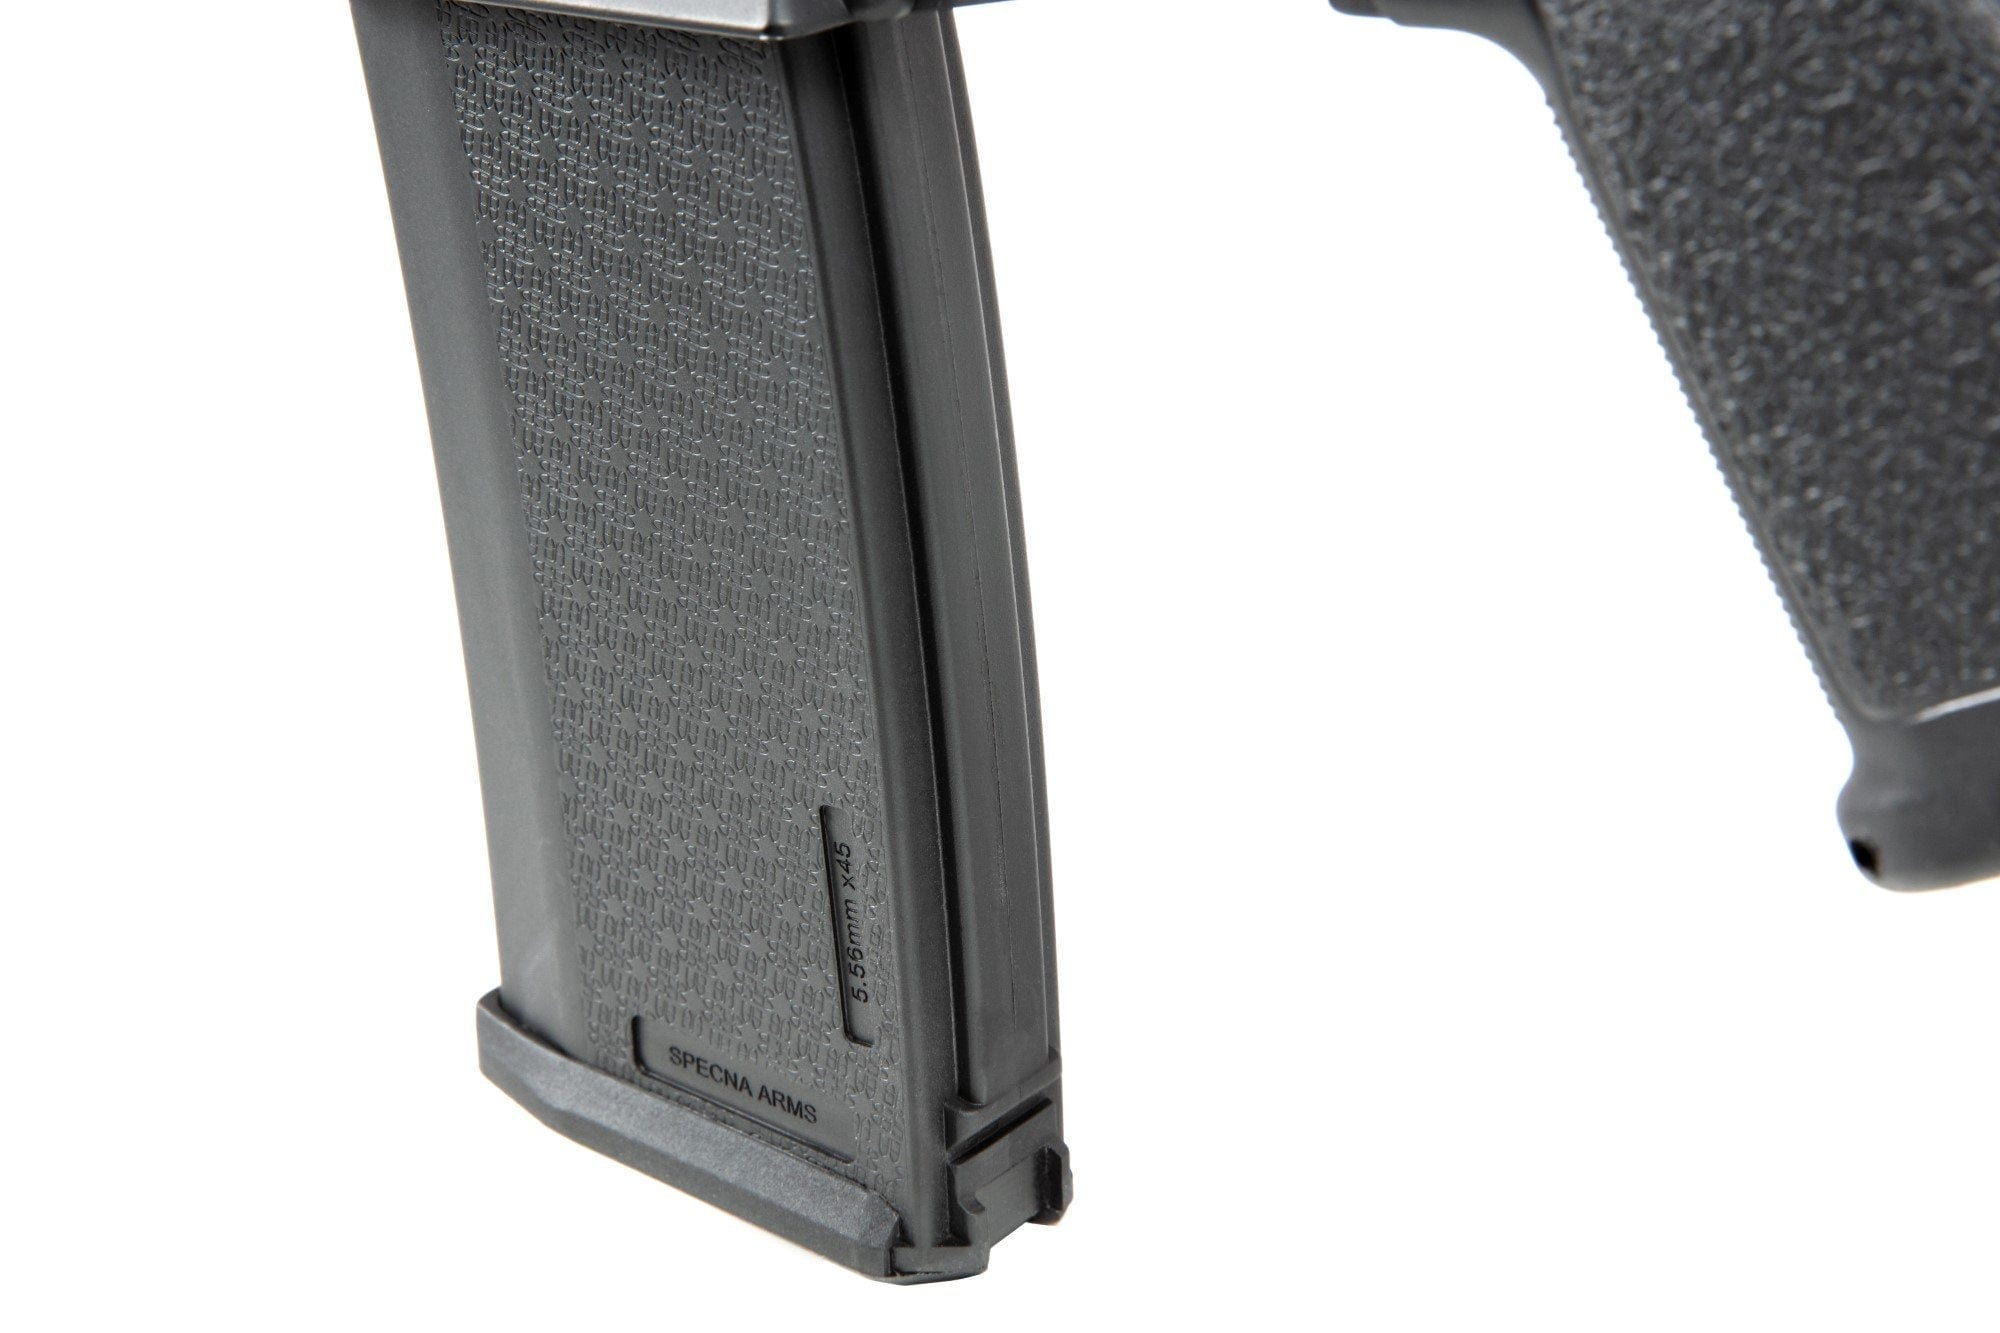 SA-E02 EDGE ™ RRA Carbine Replica - Black by Specna Arms on Airsoft Mania Europe